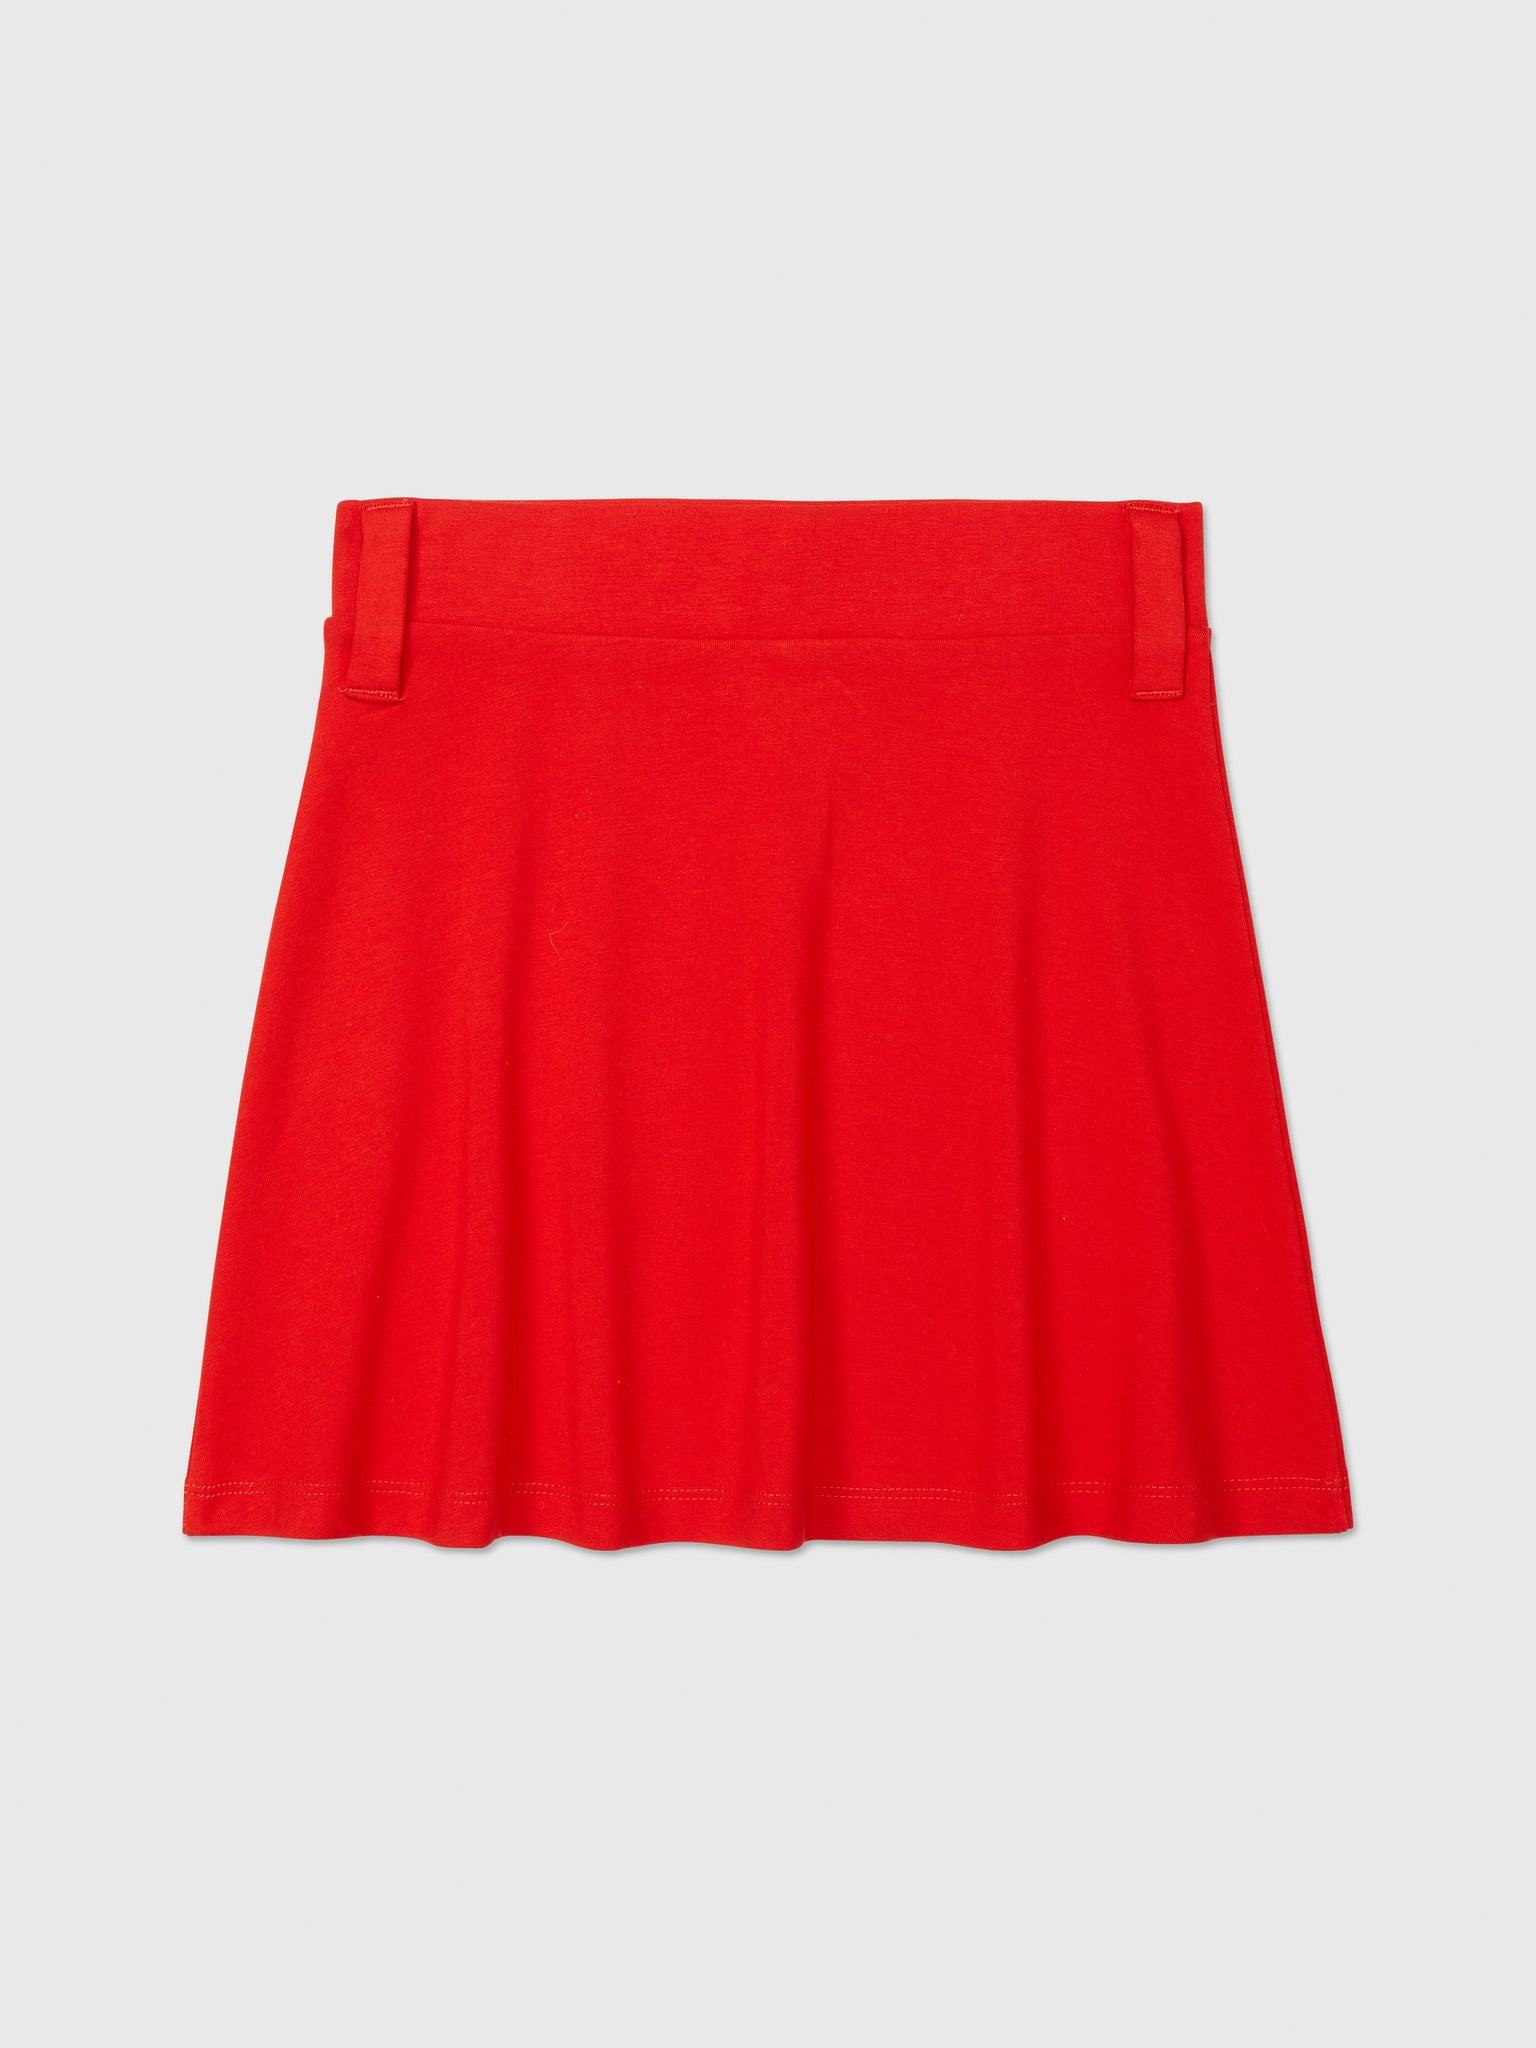 Essential Skater Skirt (Girls) - Red